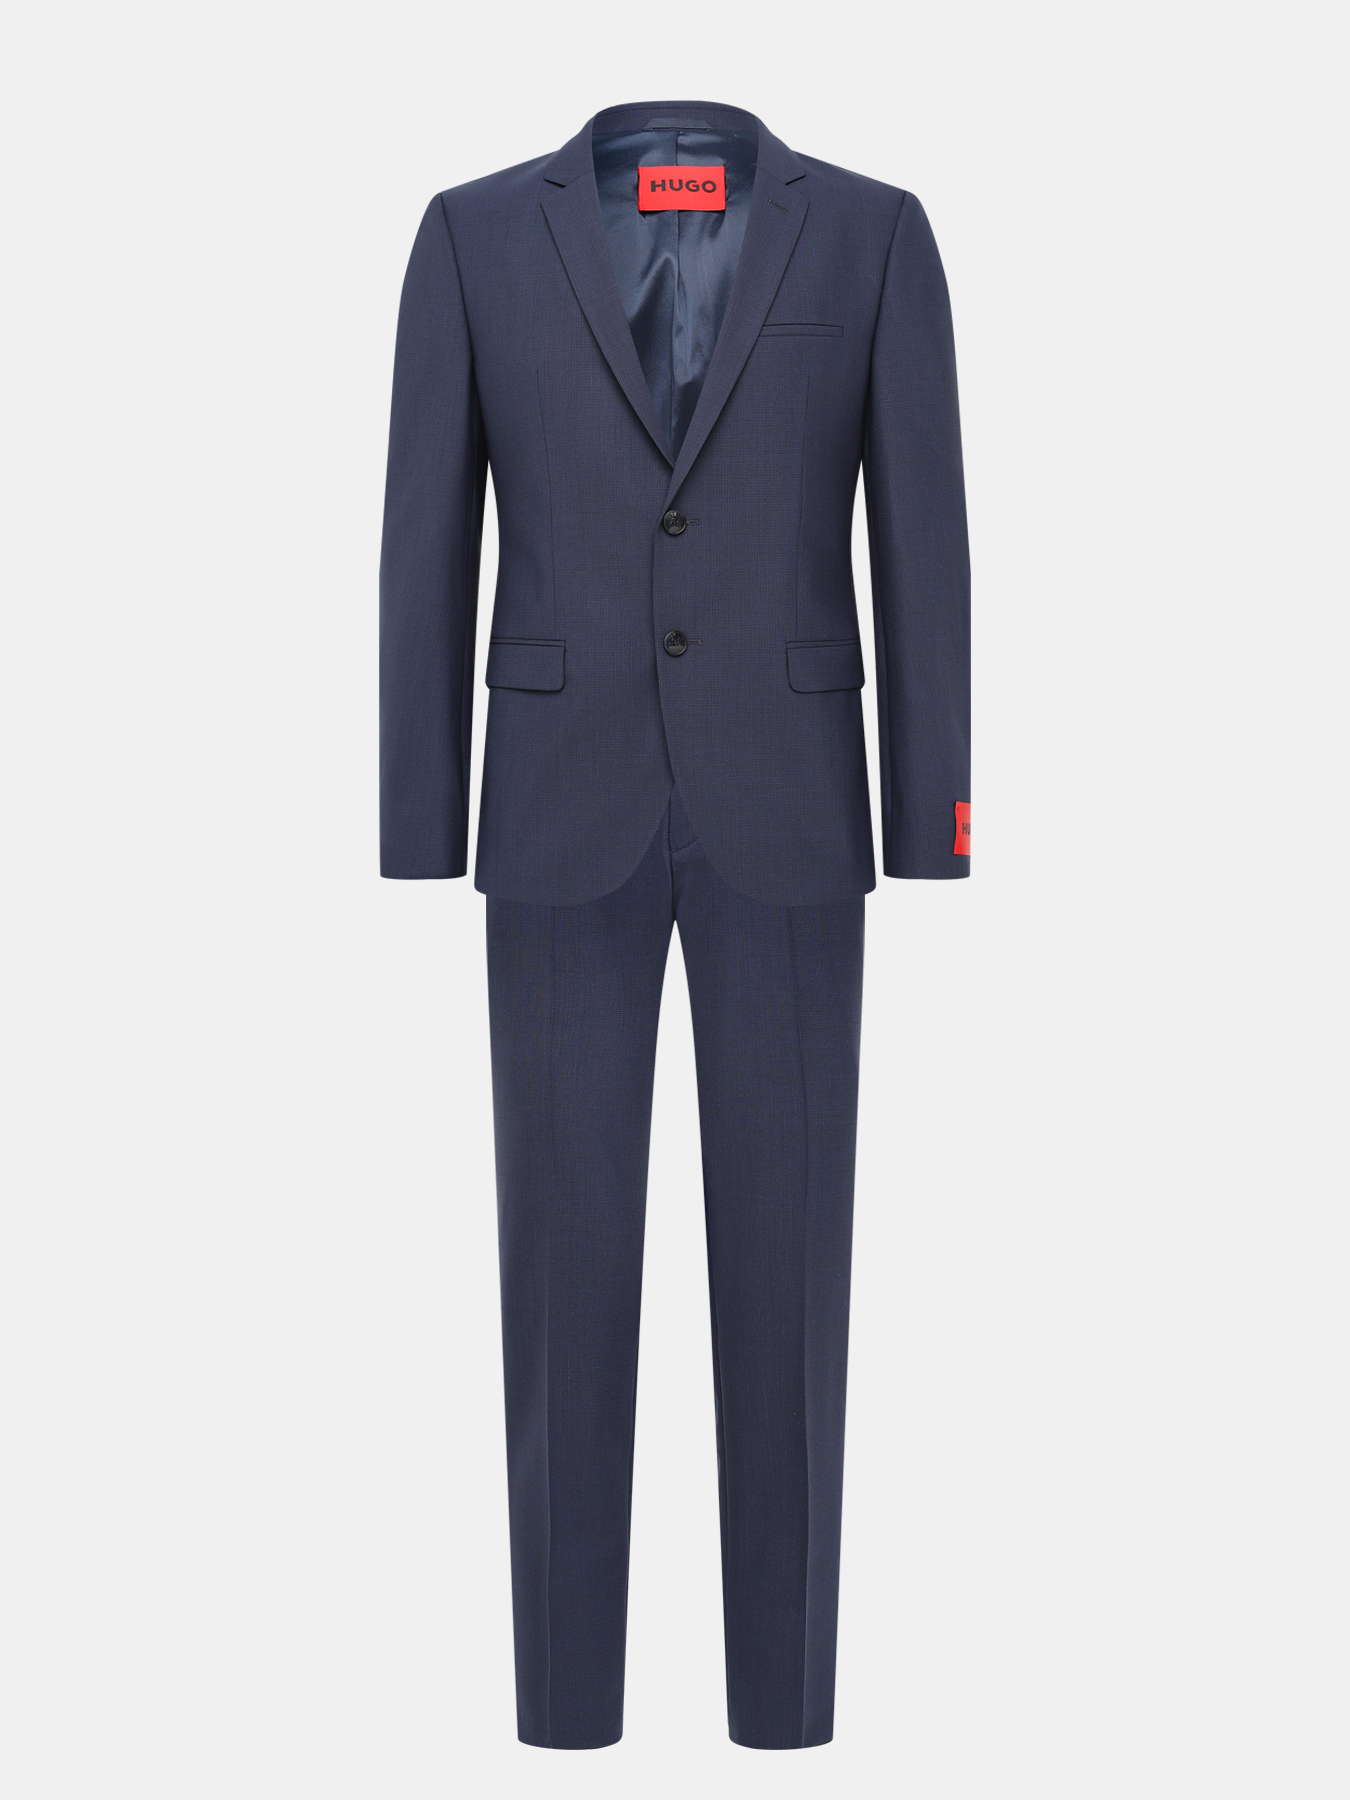 Классический костюм Arti/Hesten HUGO 421896-025, цвет темно-синий, размер 48